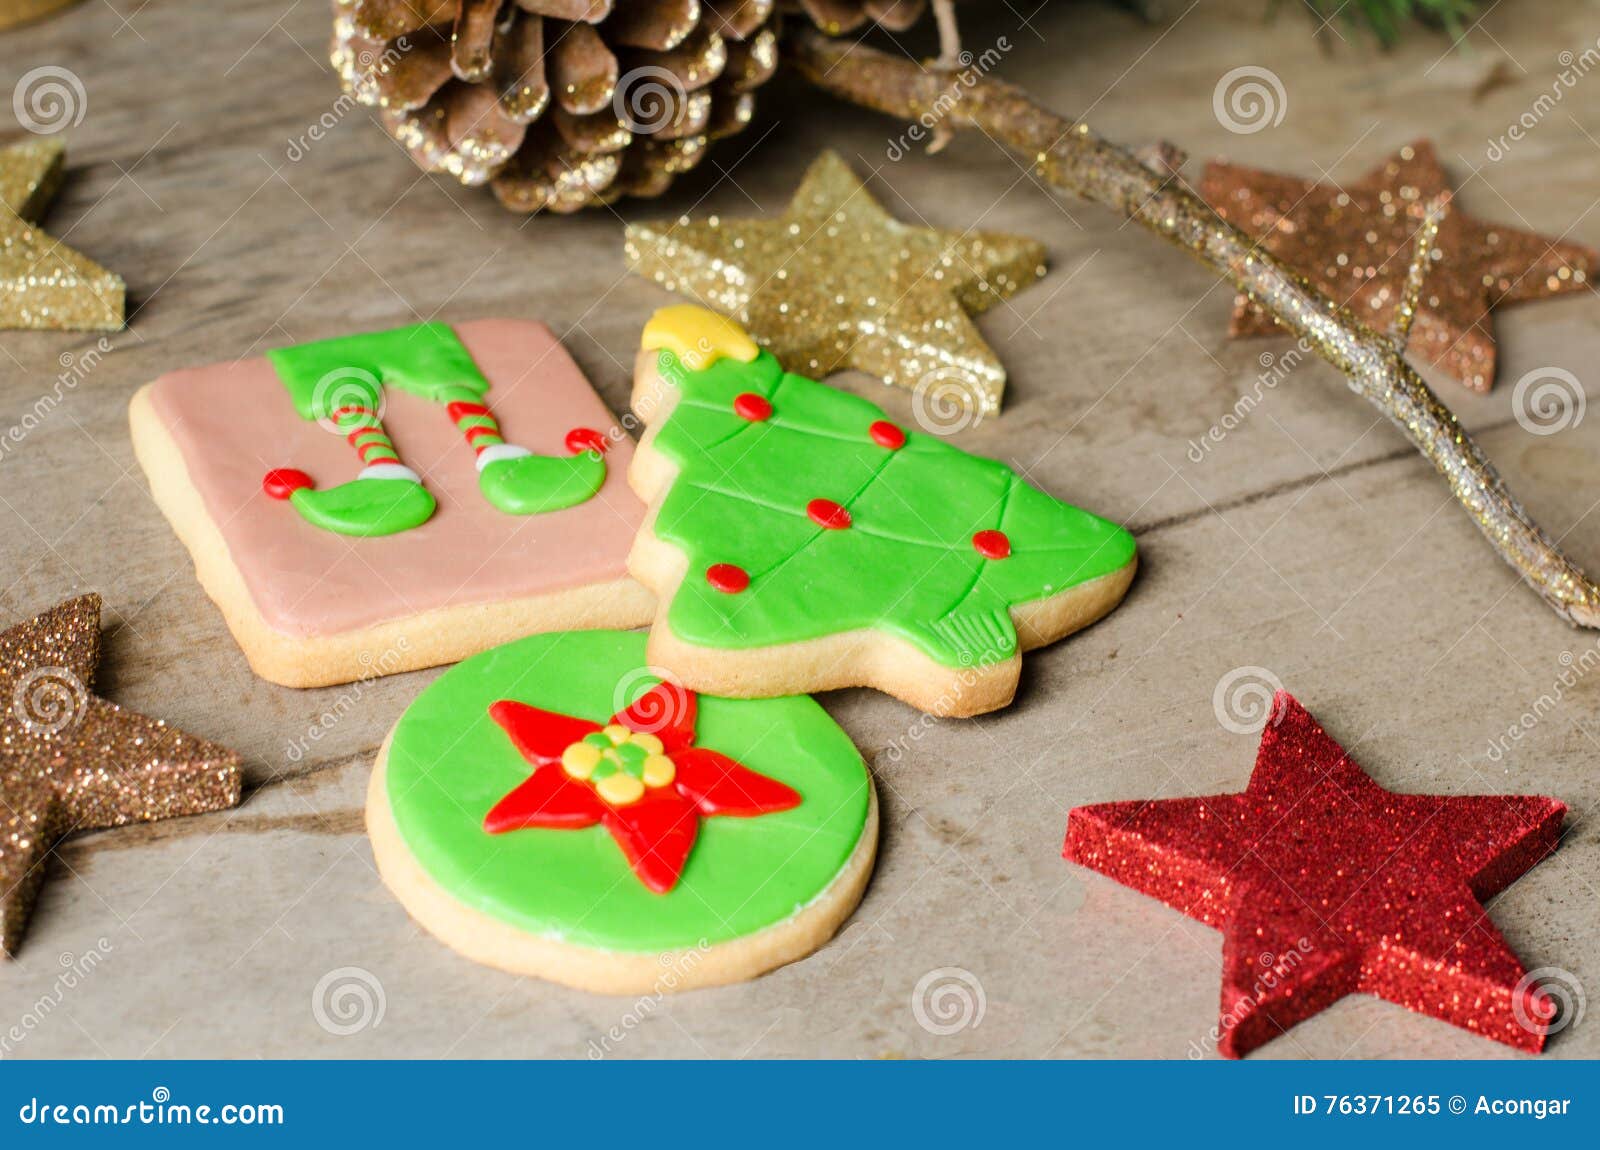 homemade christmas cookies.